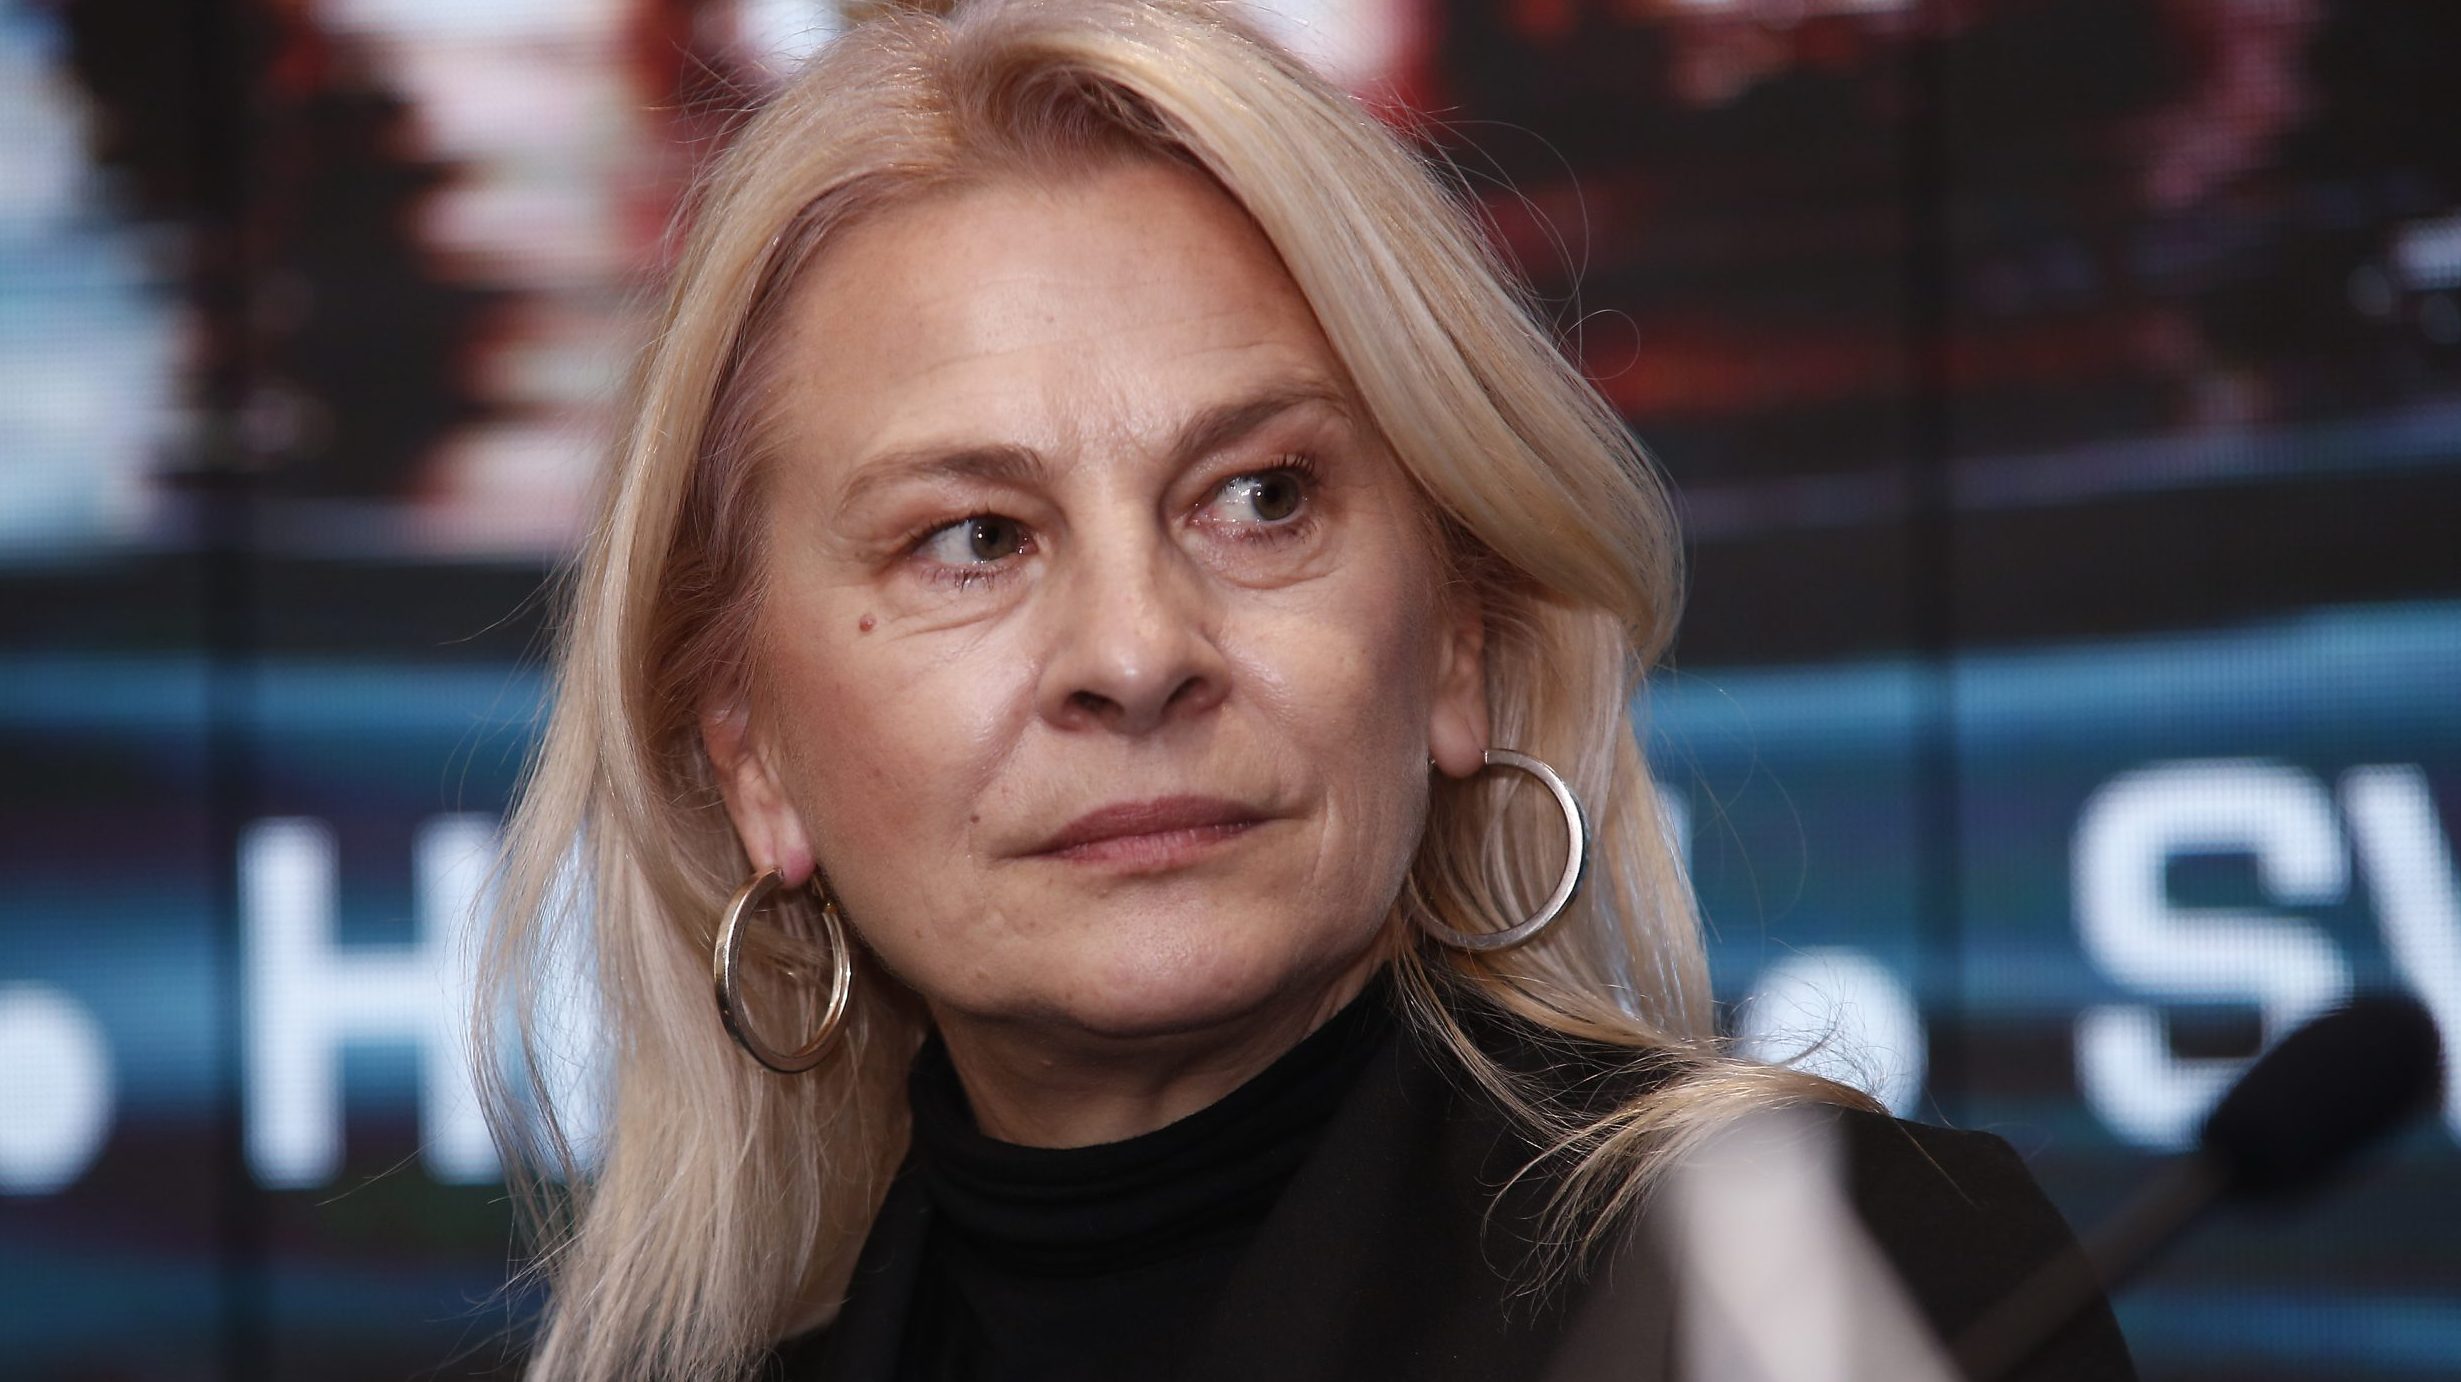 Jasna Đuričić